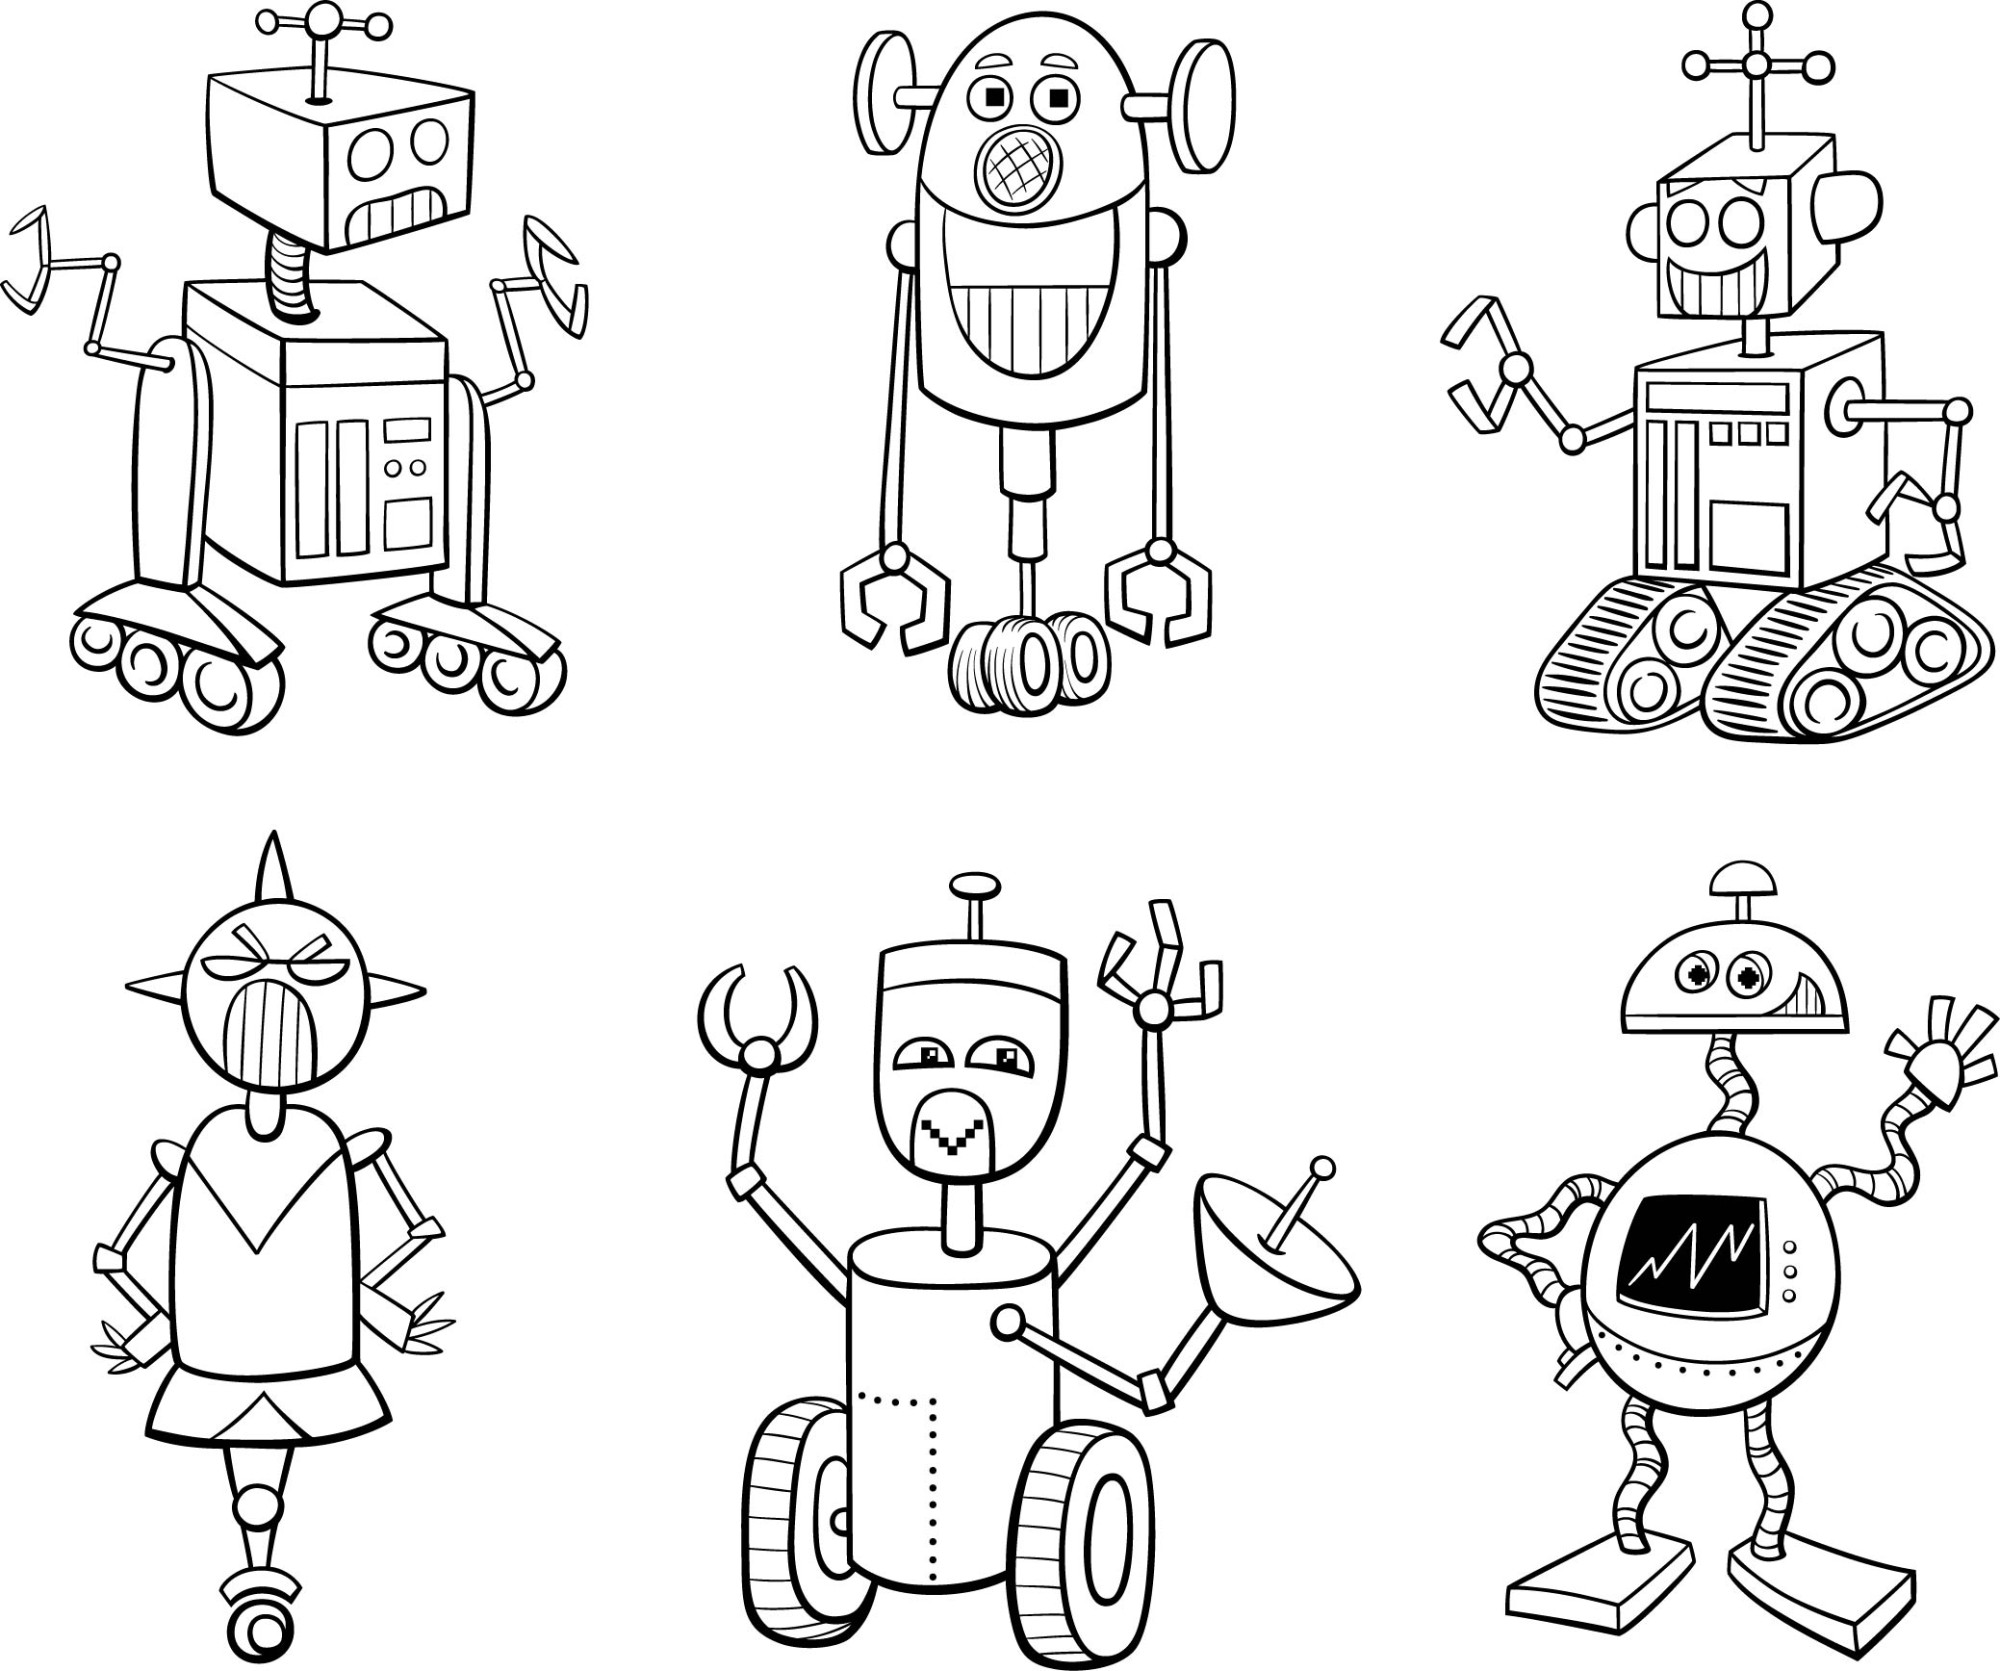 Раскраска для детей: галактические персонажи роботы